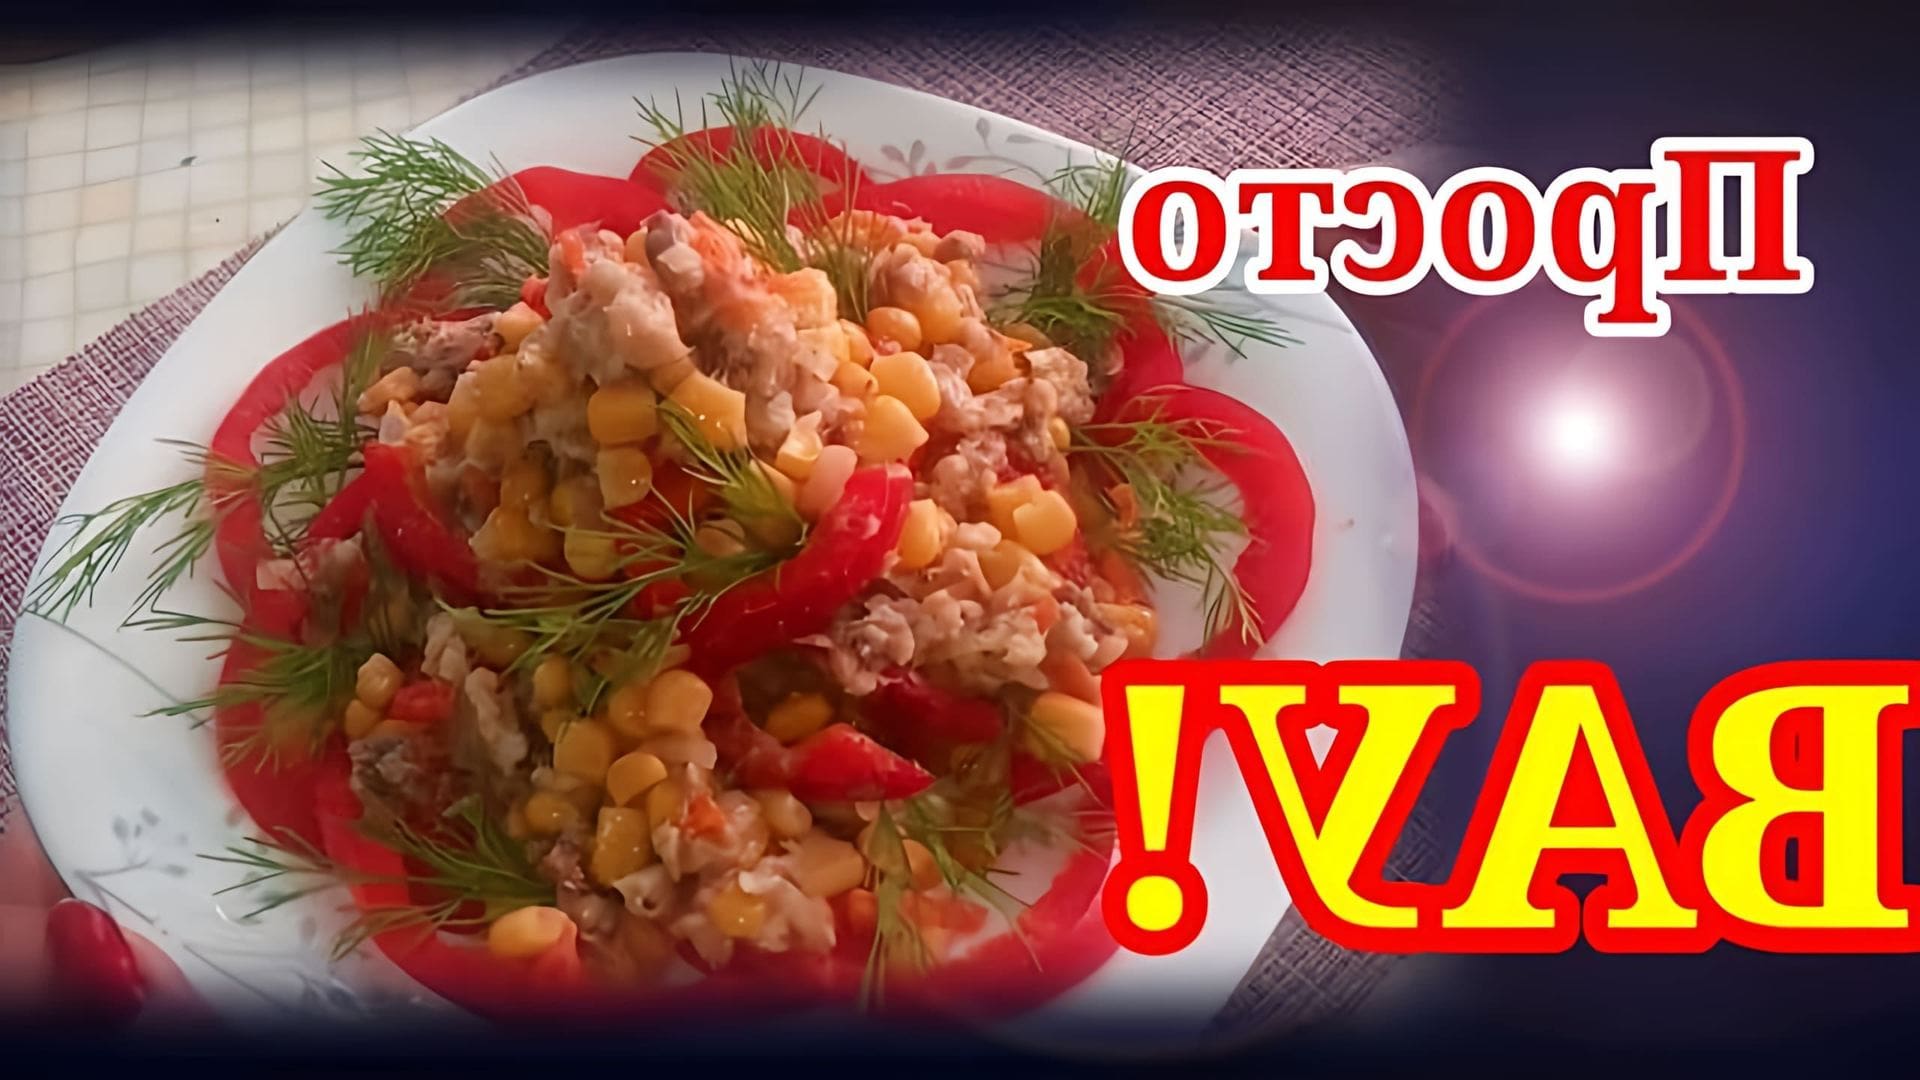 В этом видеоролике демонстрируется процесс приготовления постного салата из рыбной консервы, сладкой кукурузы, болгарского перца, моркови и лука